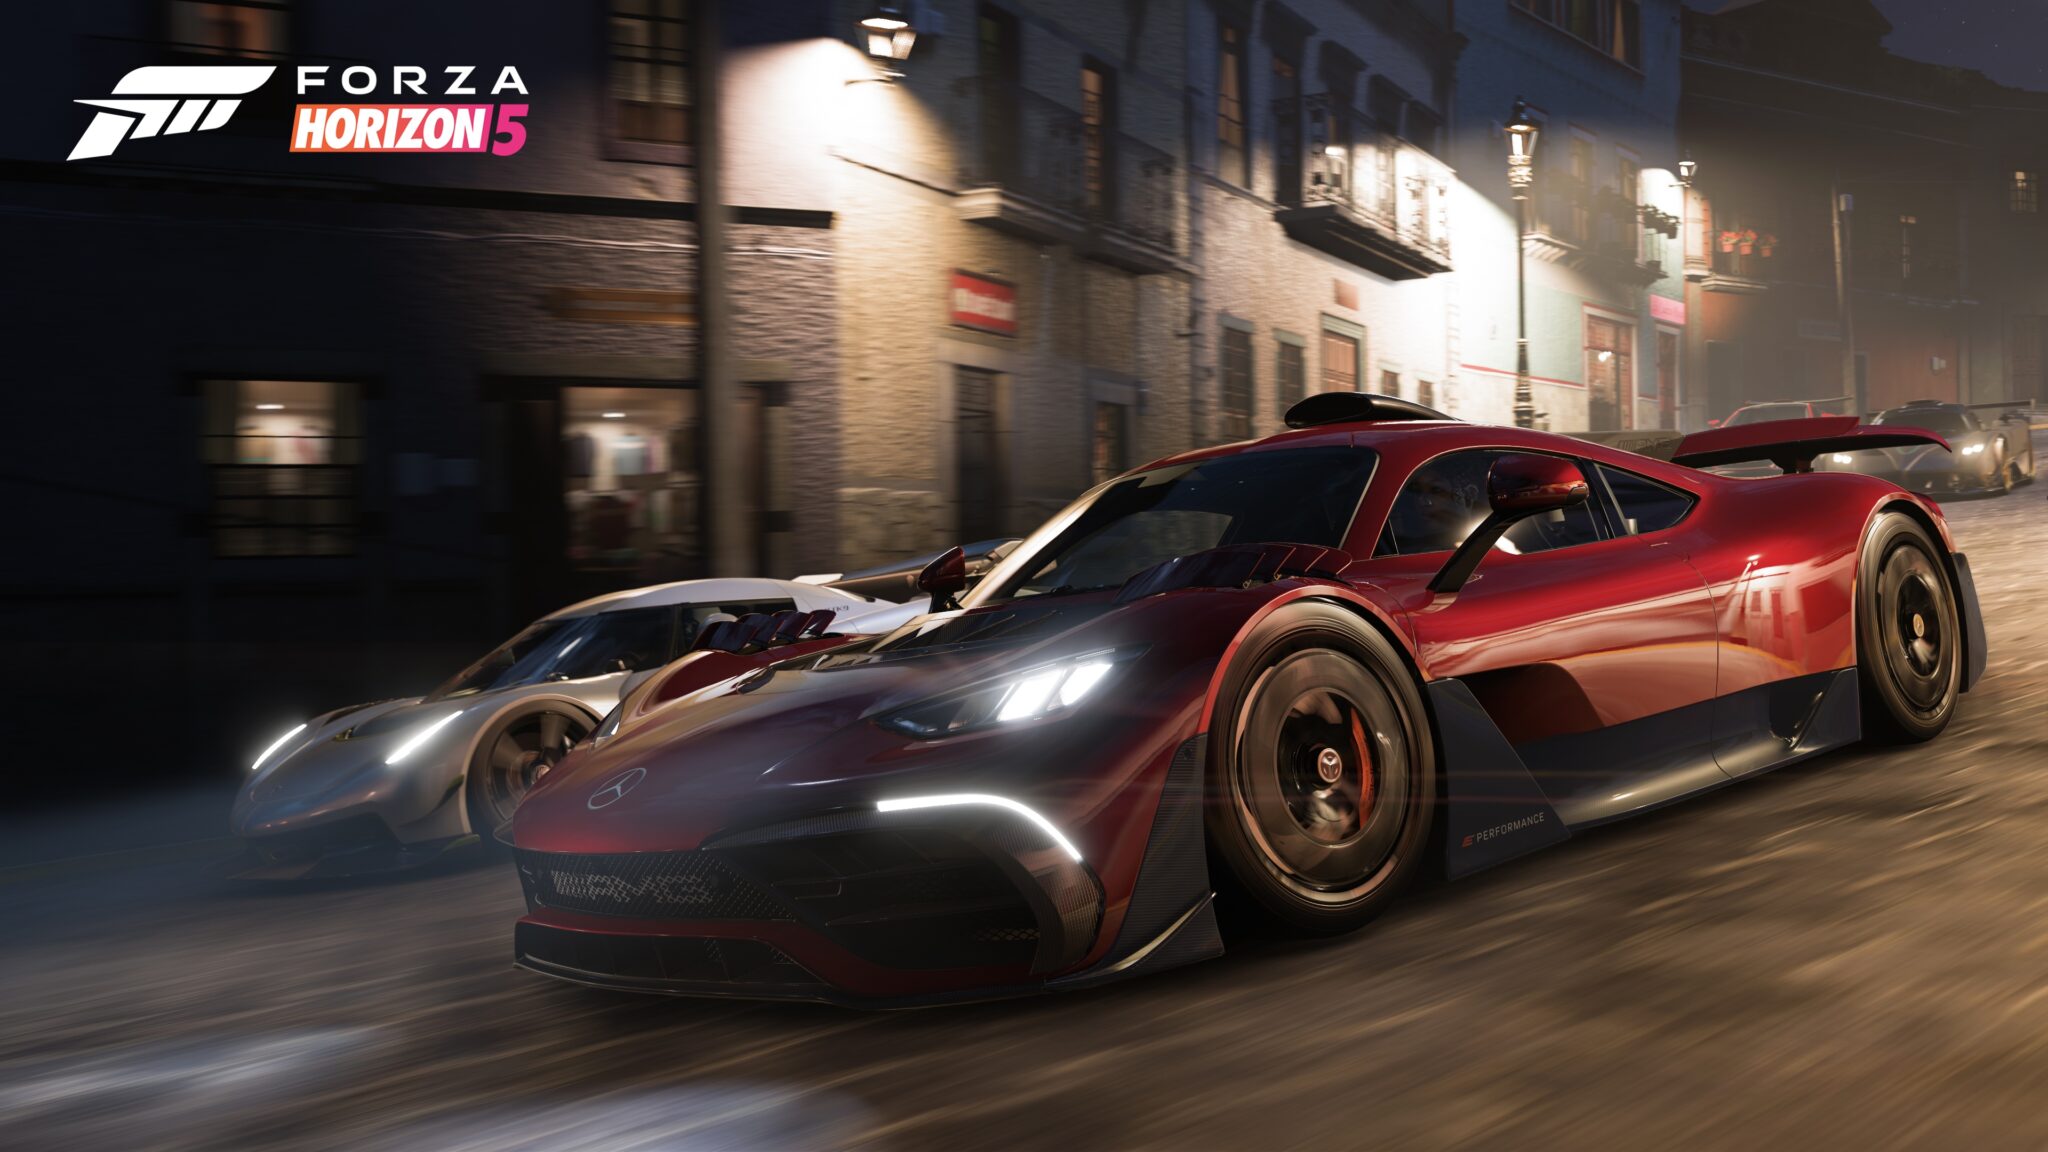 Forza Horizon 5 offre una fantasia di corse classiche, certo - ma non è necessario perseguirla